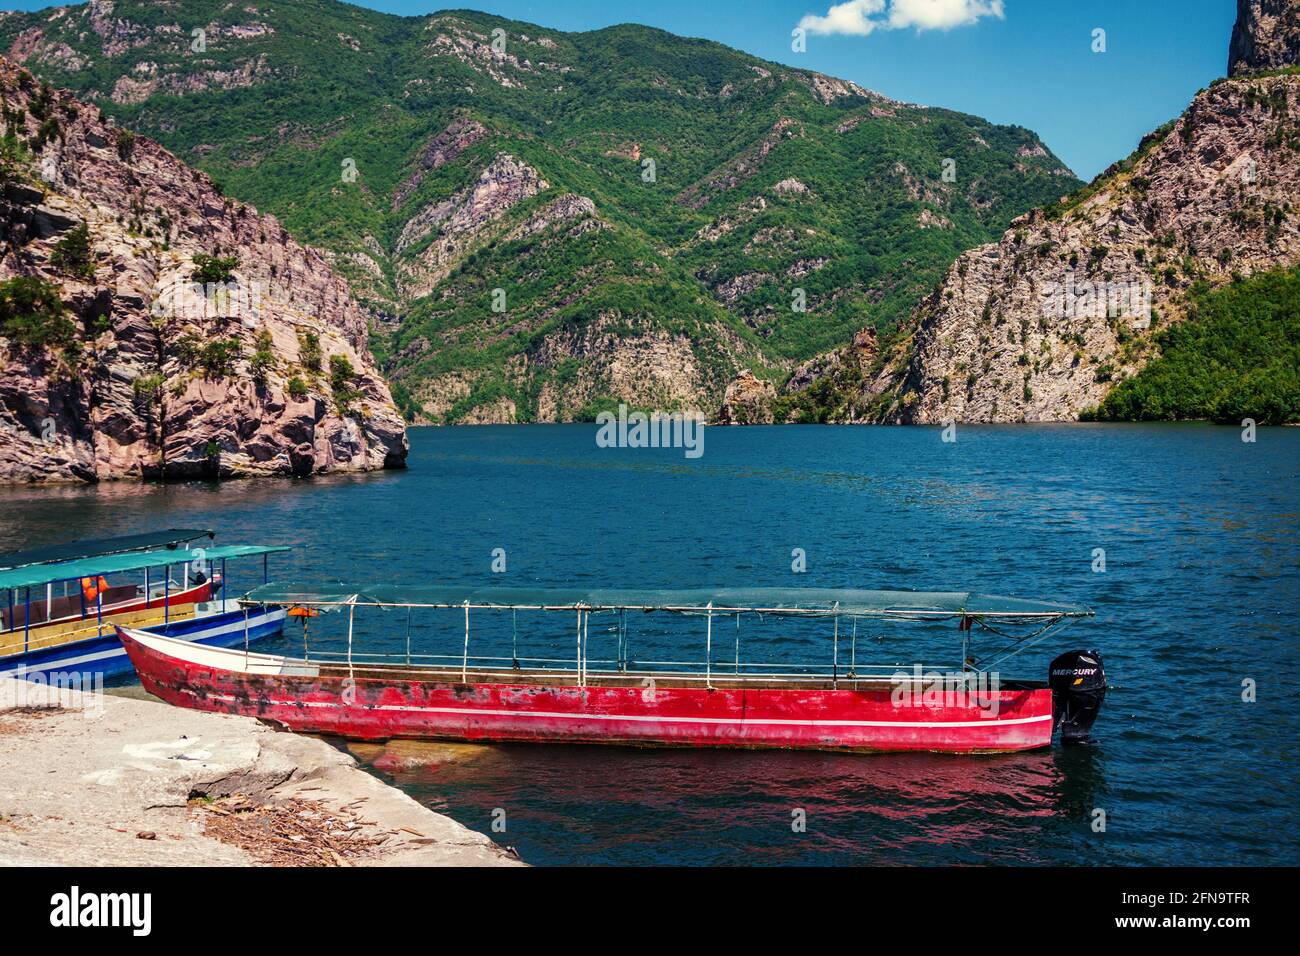 Sommerlandschaft – albanische Berge, bedeckt mit üppigem Laub, See mit ruhigem blauem Wasser und altem roten Boot. Stockfoto